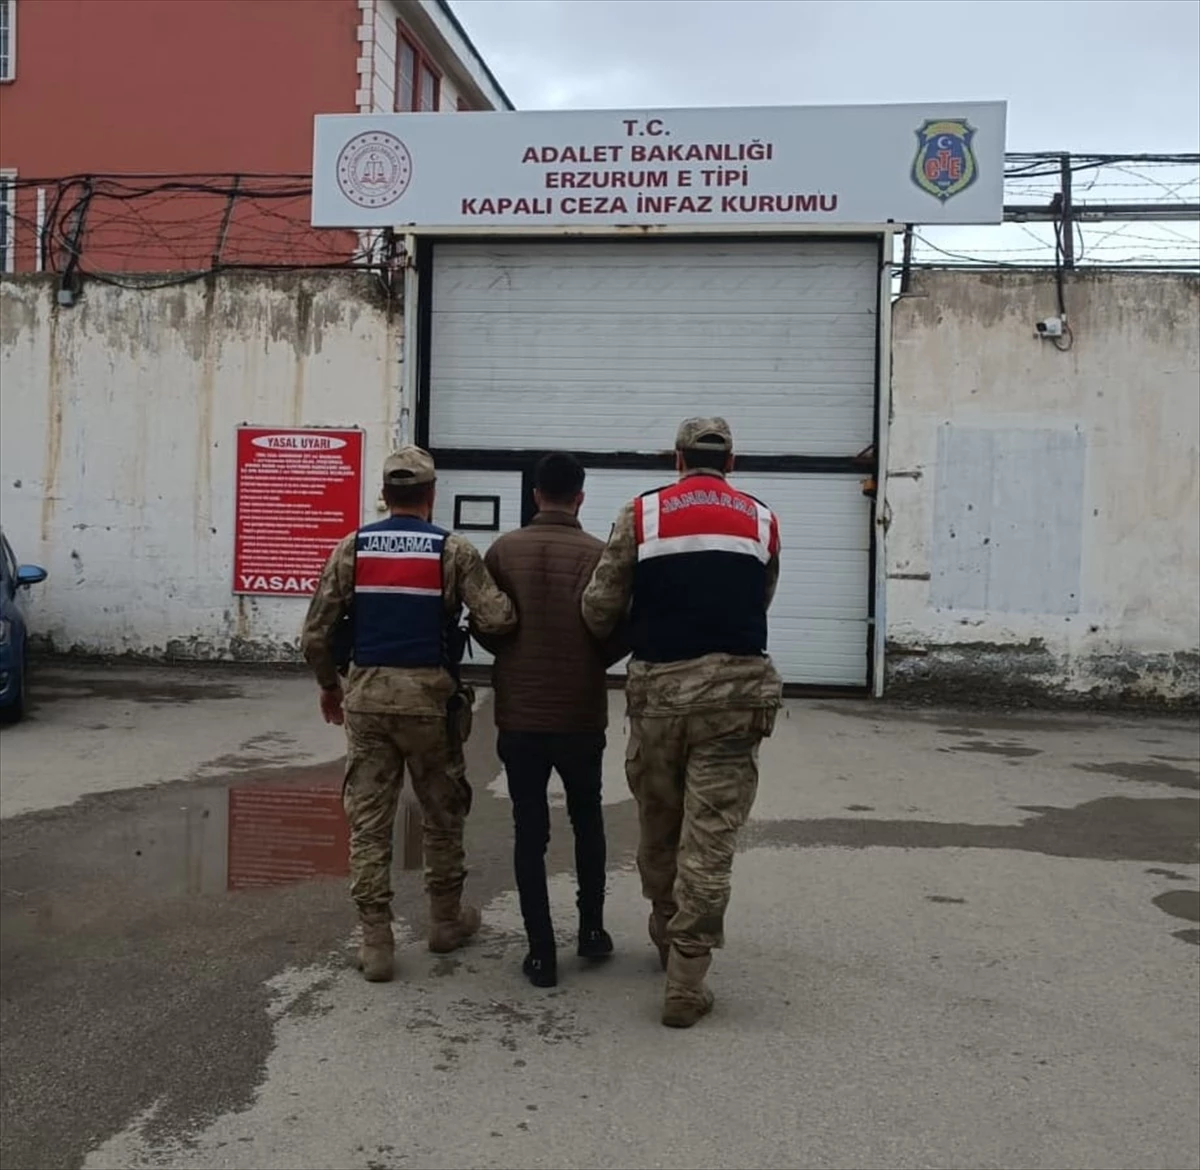 Erzurum’da düzenlenen ‘JASAT Mercek-6’ operasyonunda 2 zanlı tutuklandı